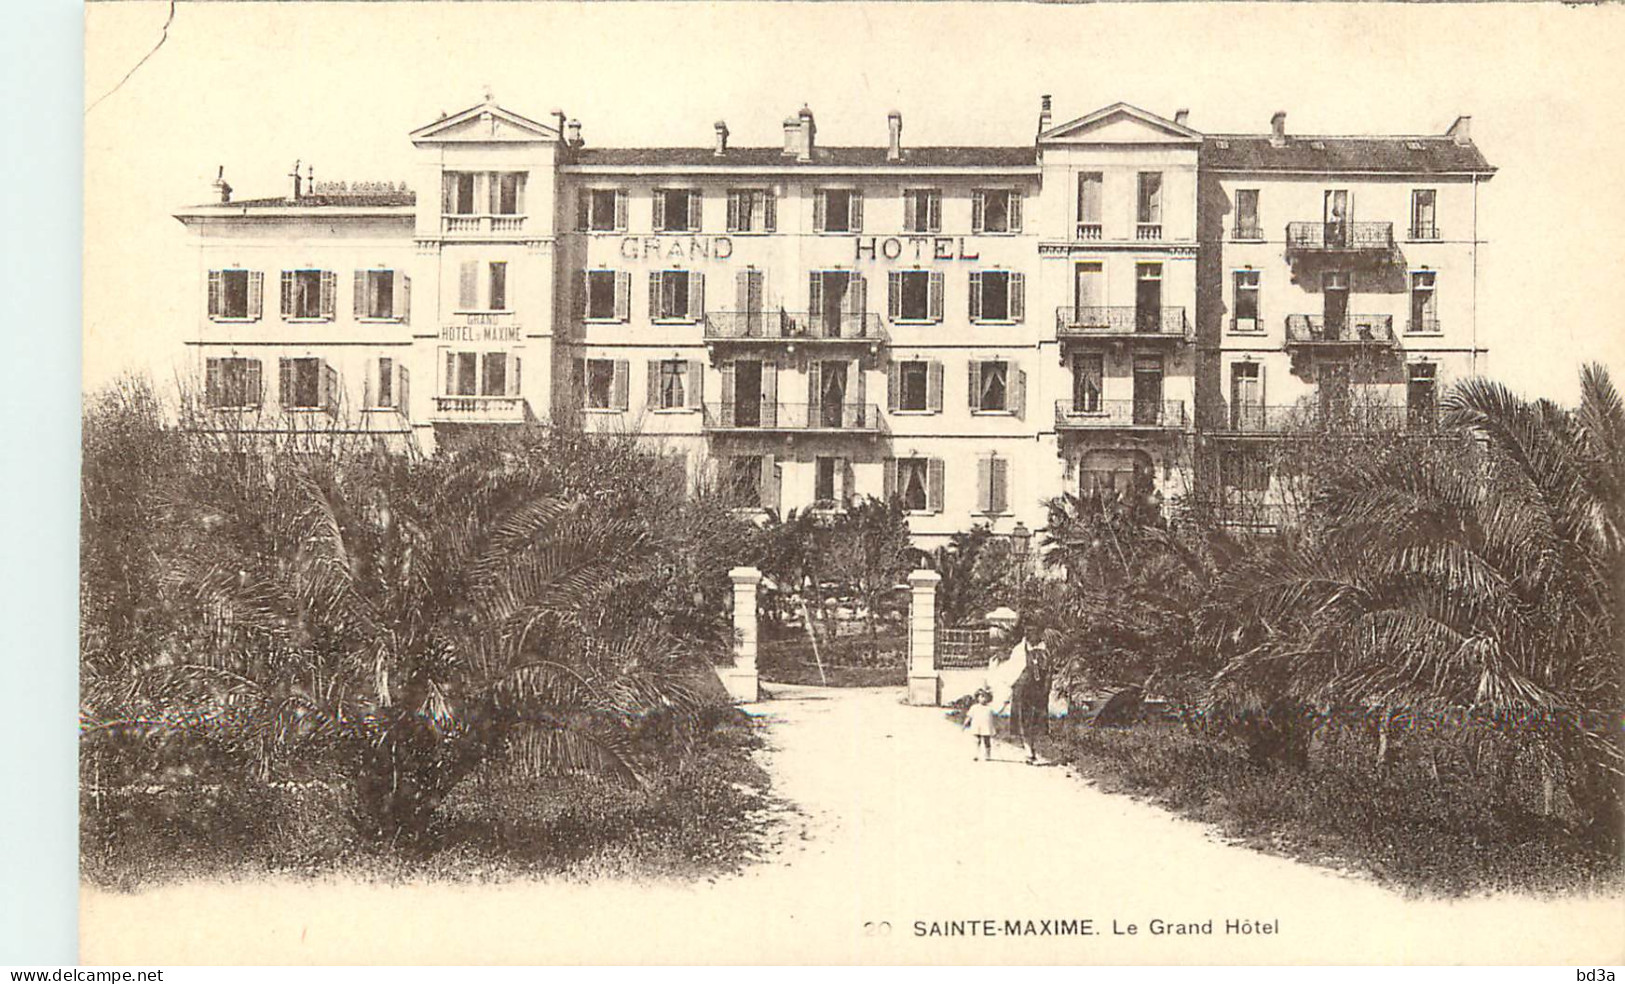  83  SAINTE MAXIME   Le Grand Hotel - Sainte-Maxime